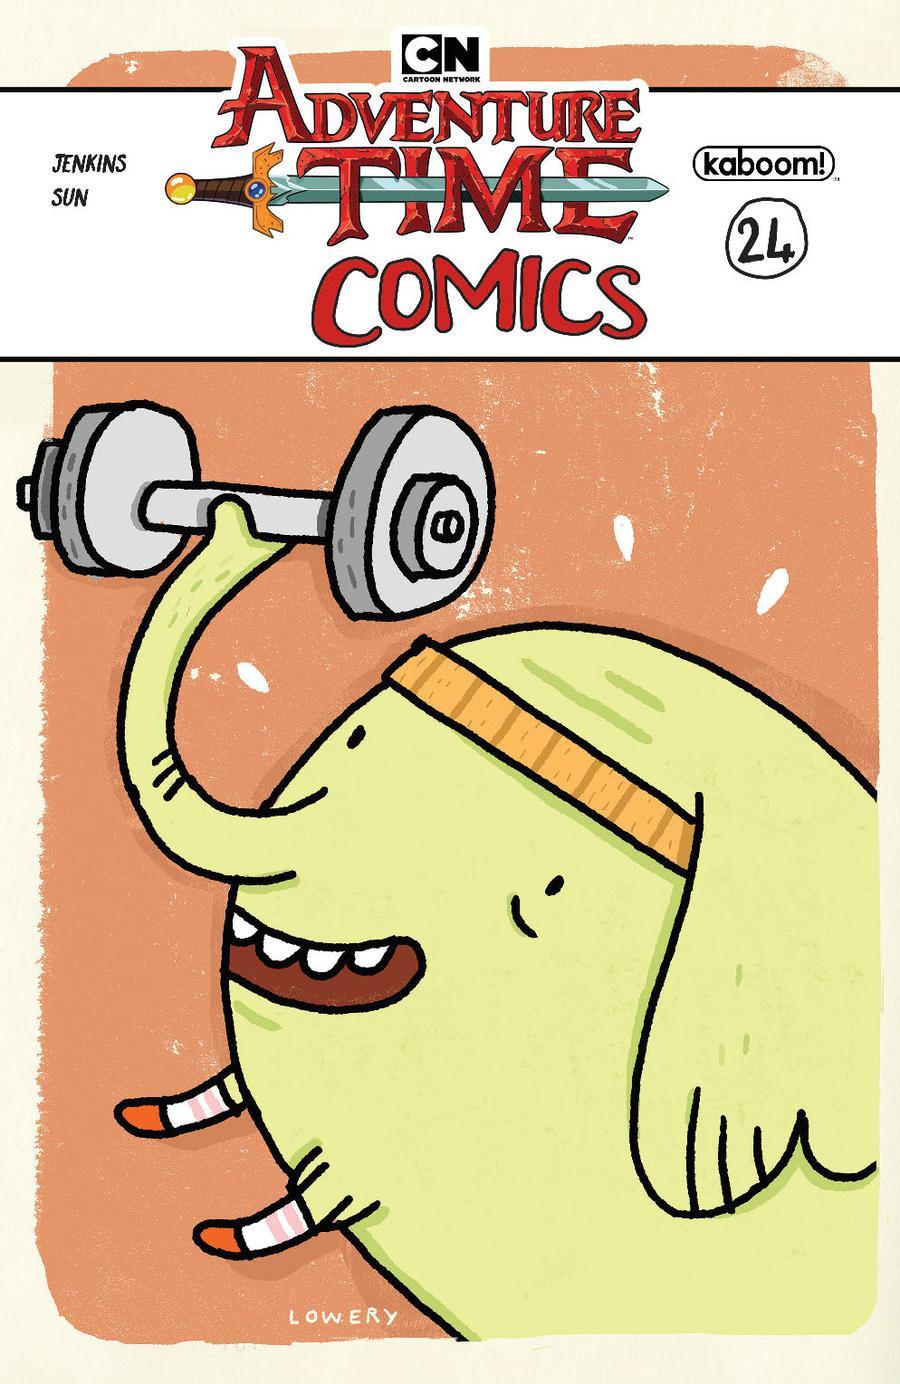 Adventure Time Comics Vol. 1 #24